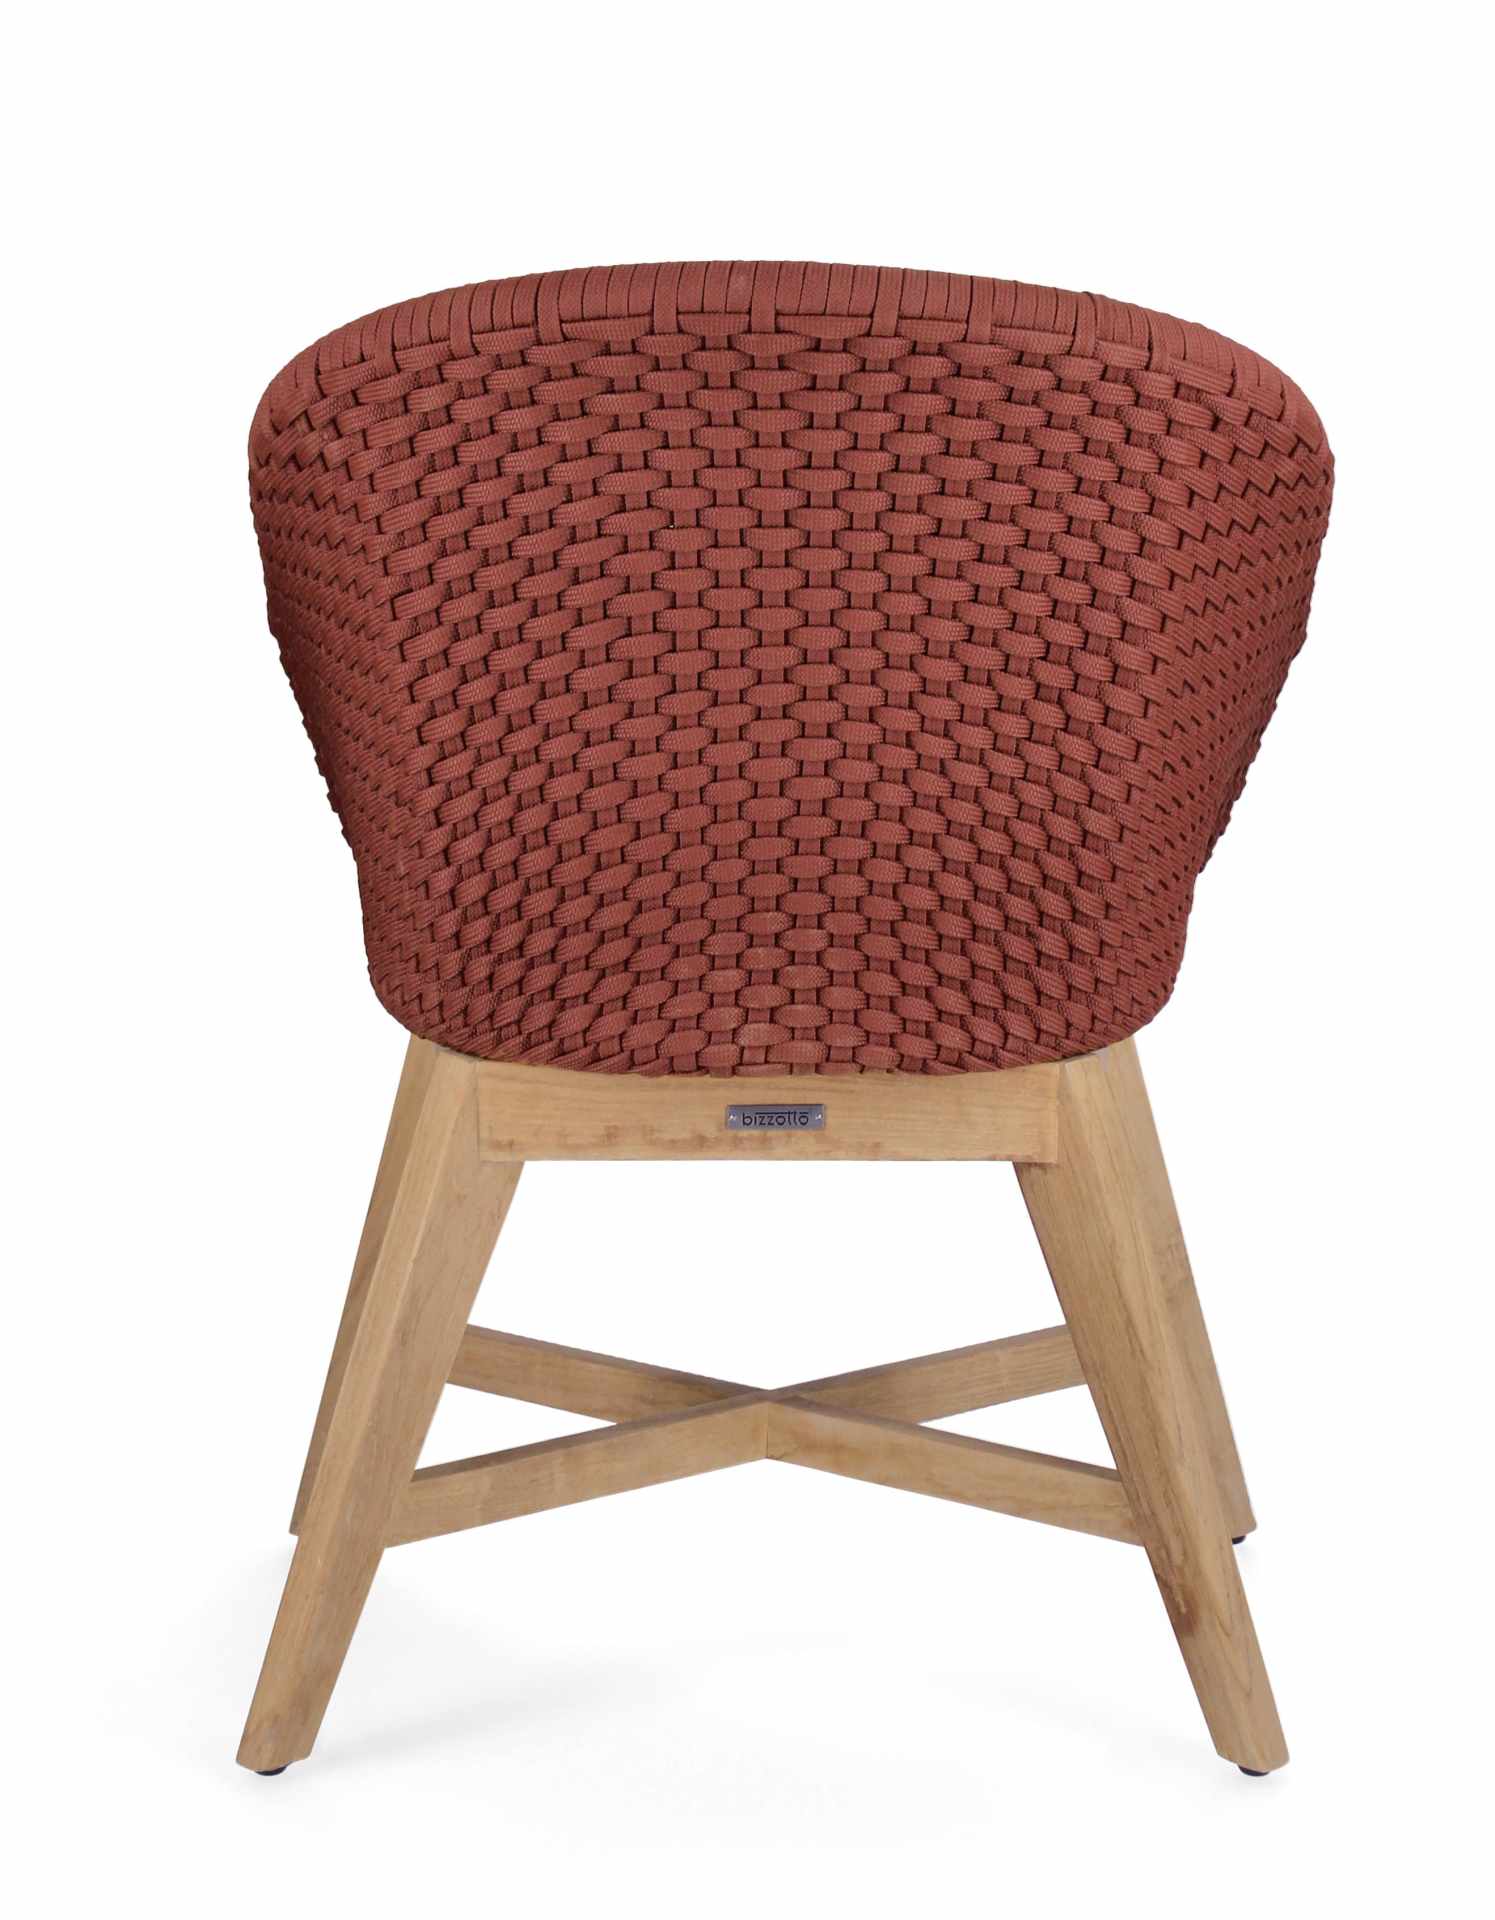 Der Gartenstuhl Coachella überzeugt mit seinem modernen Design. Gefertigt wurde er aus Olefin-Stoff, welcher einen roten Farbton besitzt. Das Gestell ist aus Teakholz und hat eine natürliche Farbe. Der Stuhl verfügt über eine Sitzhöhe von 46 cm und ist fü